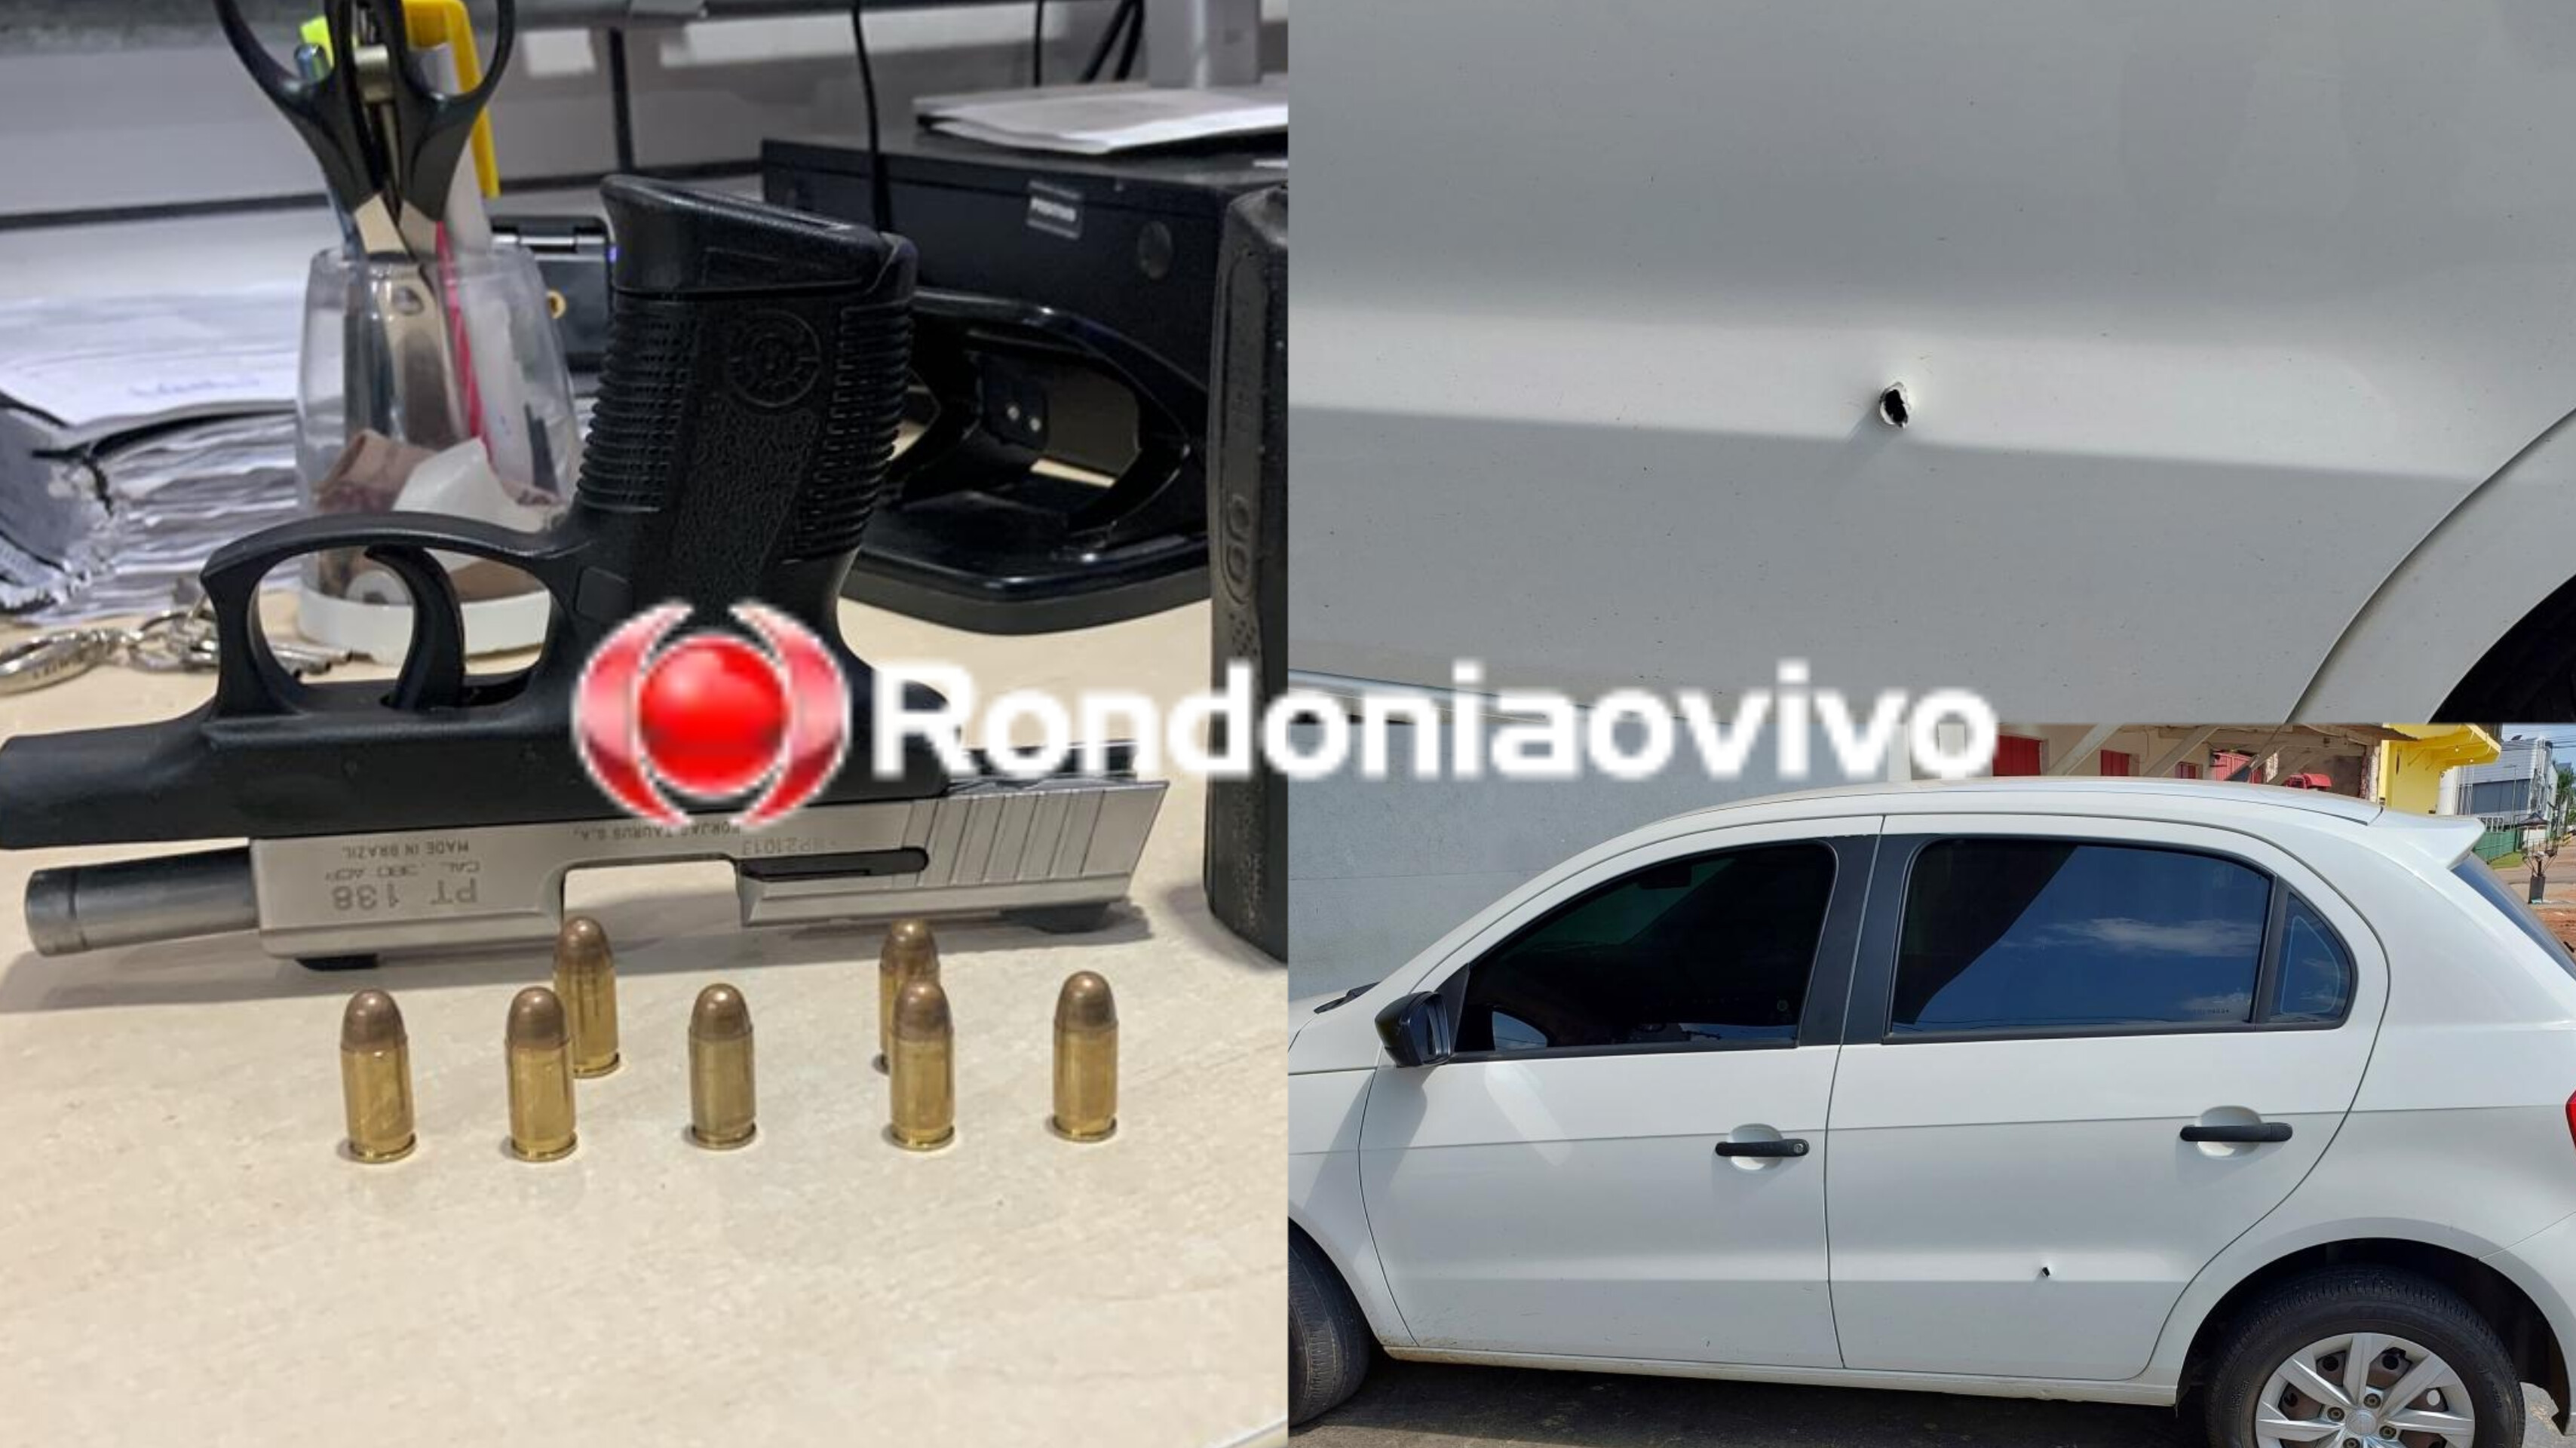 AO SAIR DO BAR: Passageiro é preso com arma emprestada de PM após atirar dentro de carro de App